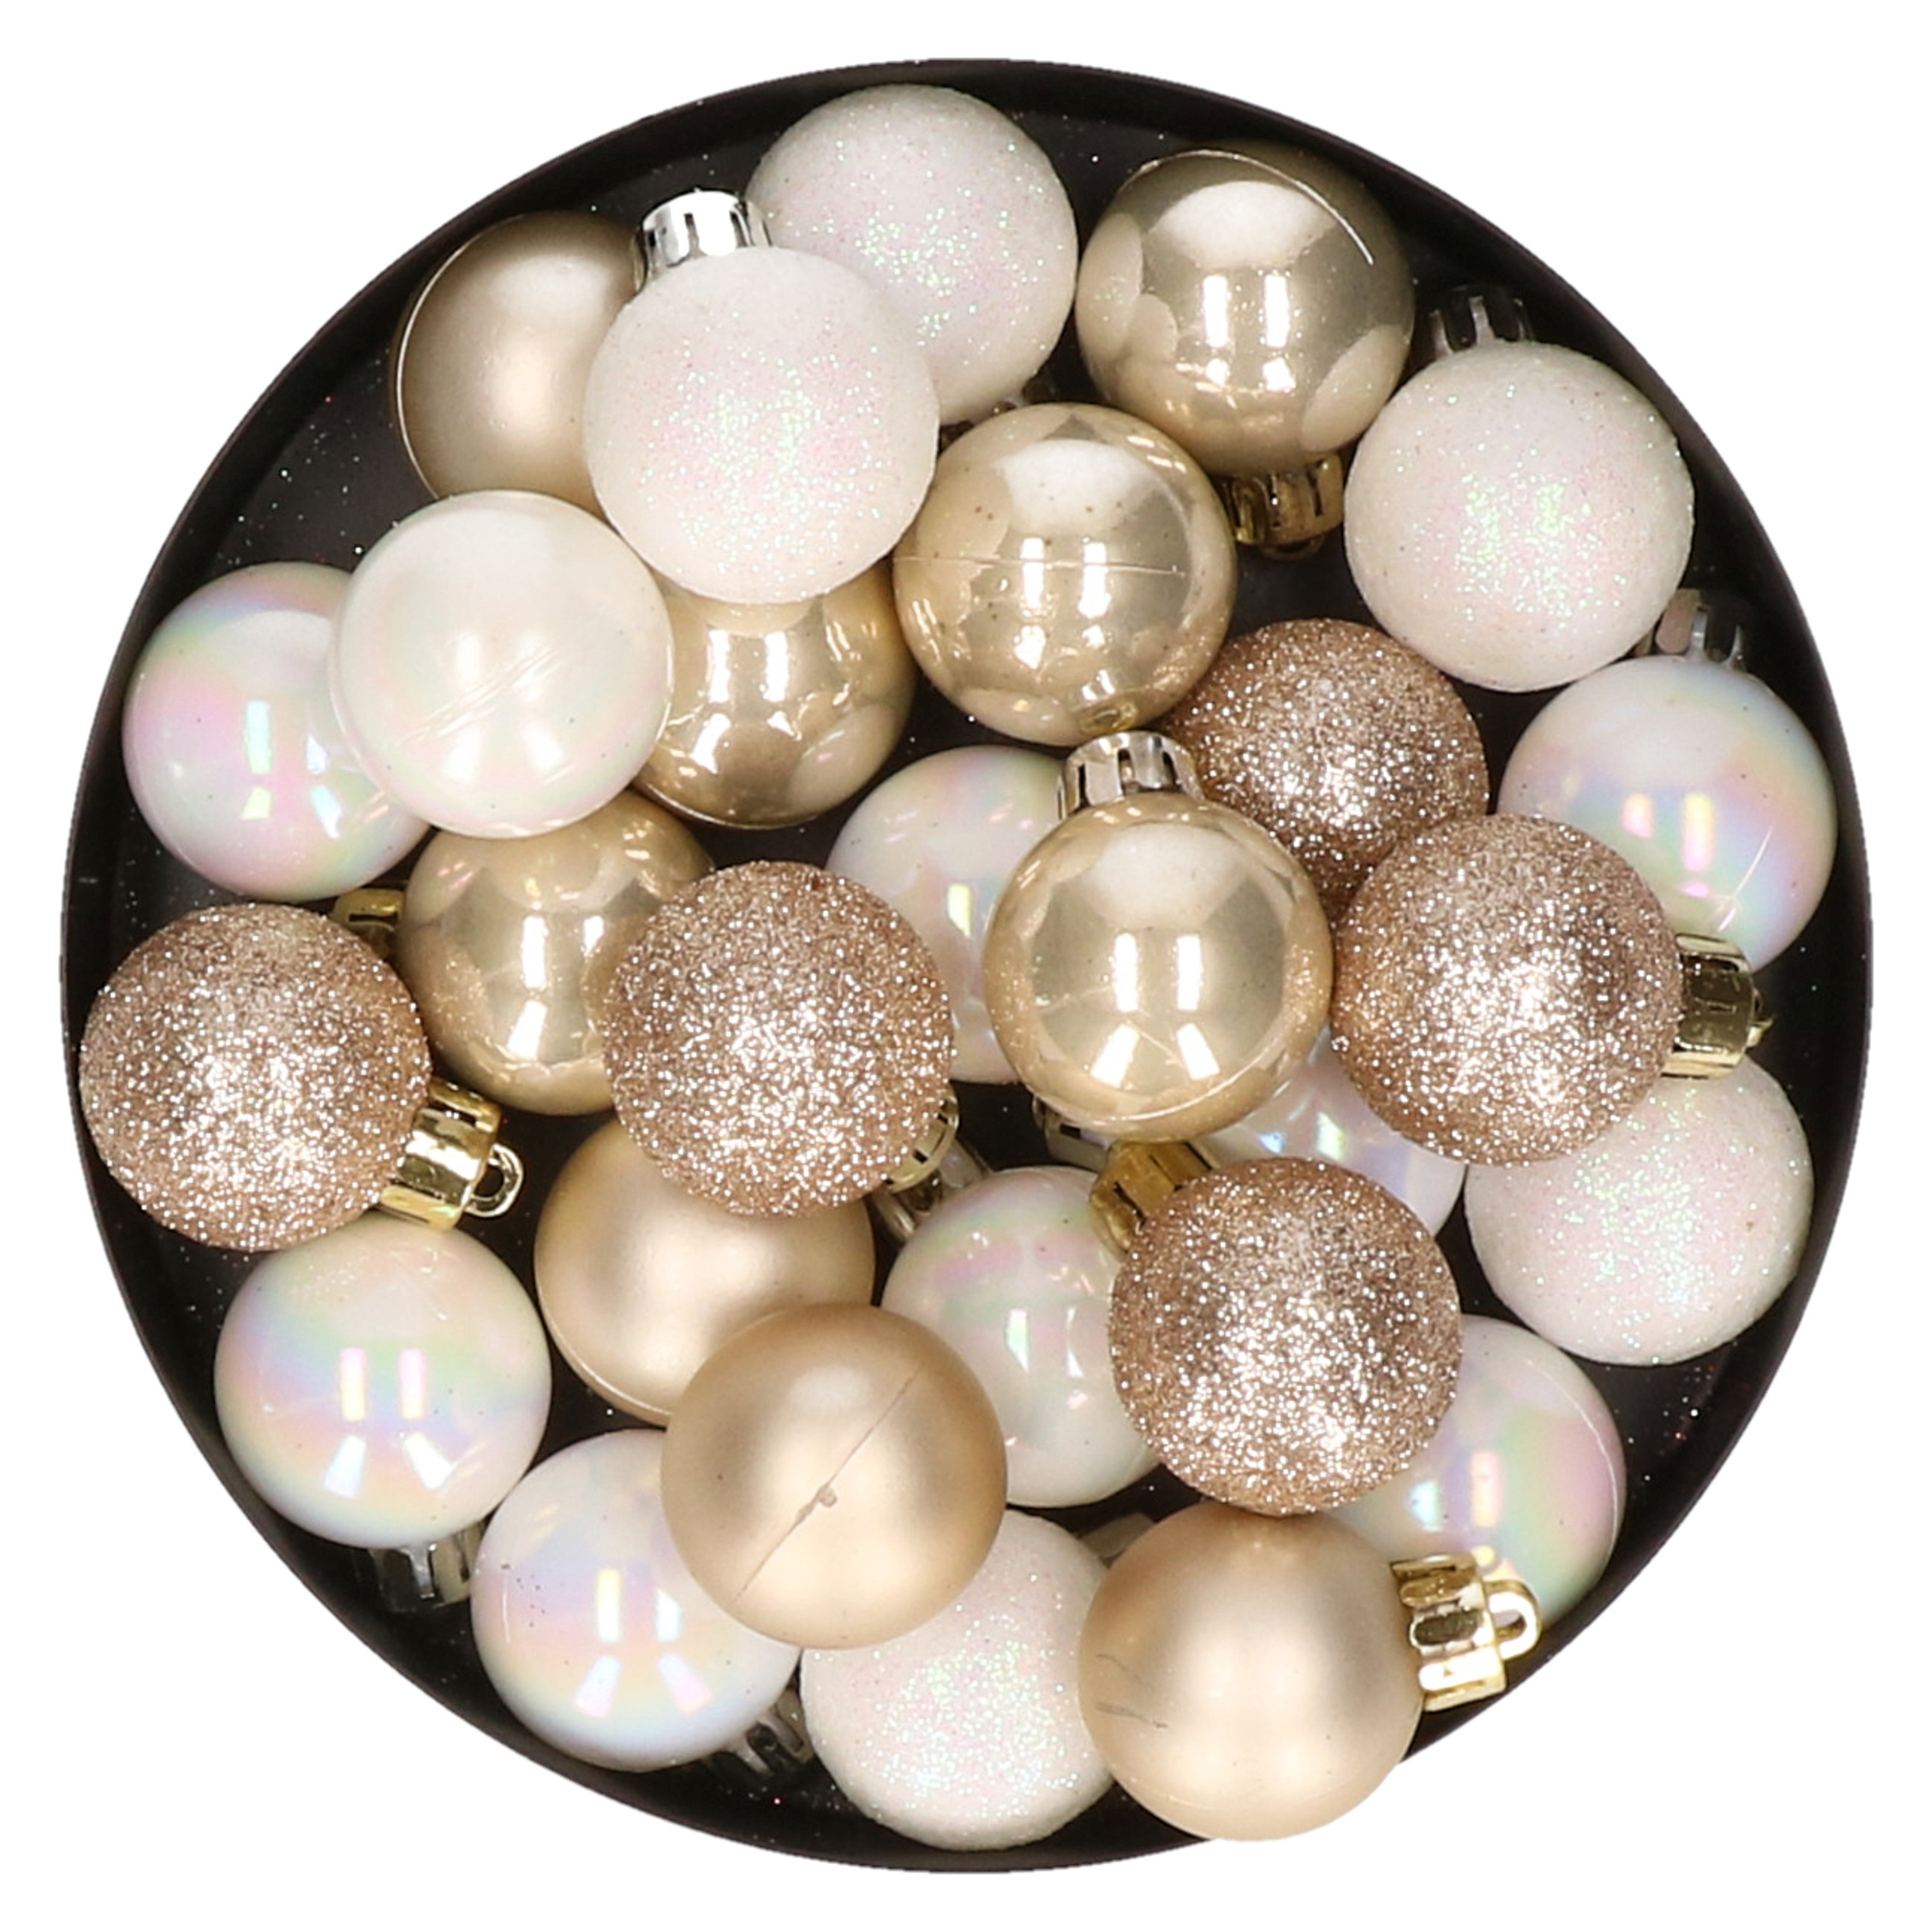 28x stuks kunststof kerstballen parelmoer wit en parel champagne mix 3 cm